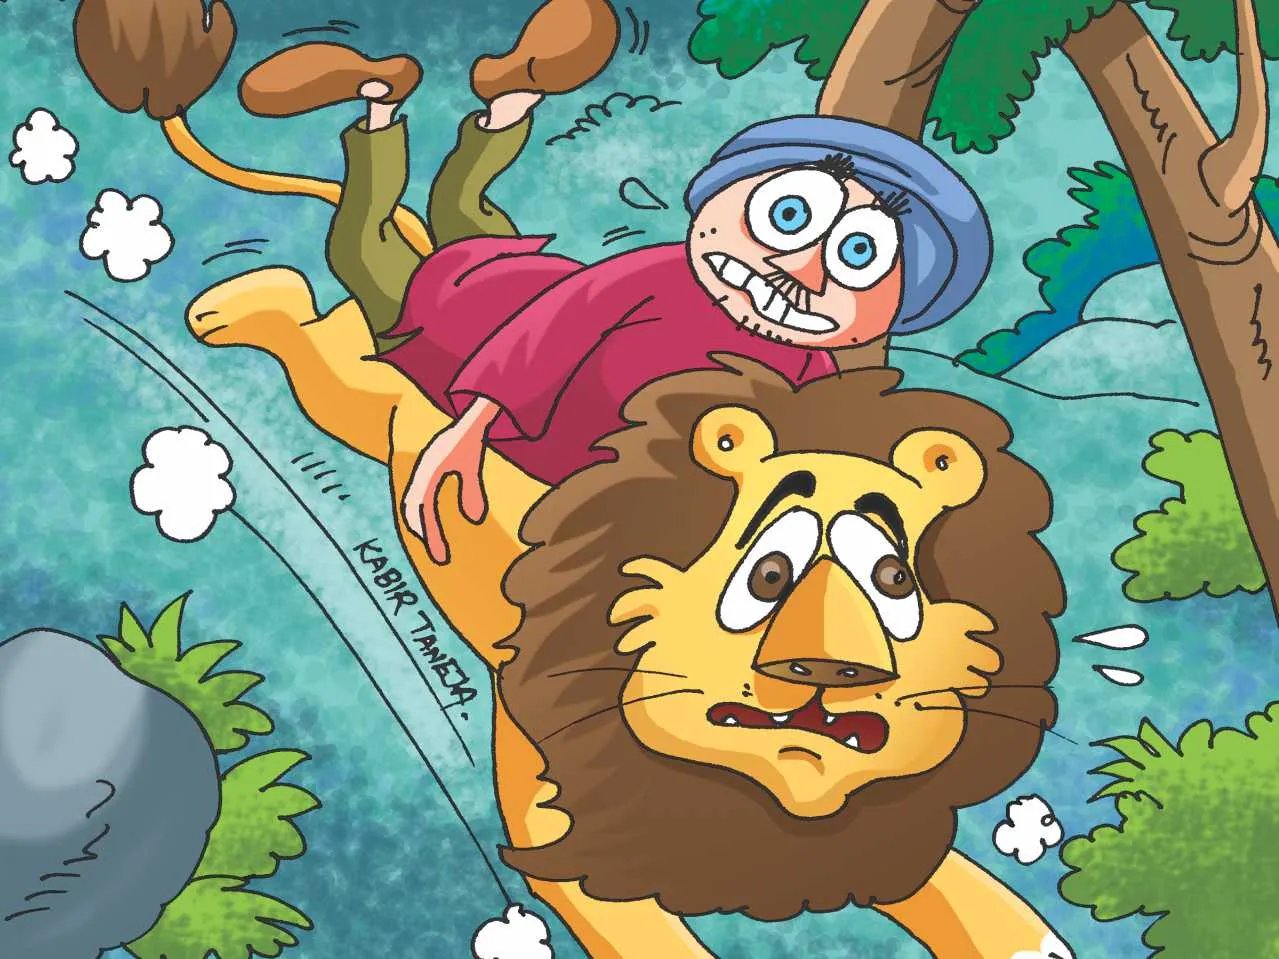 Man on lions shoulder cartoon image